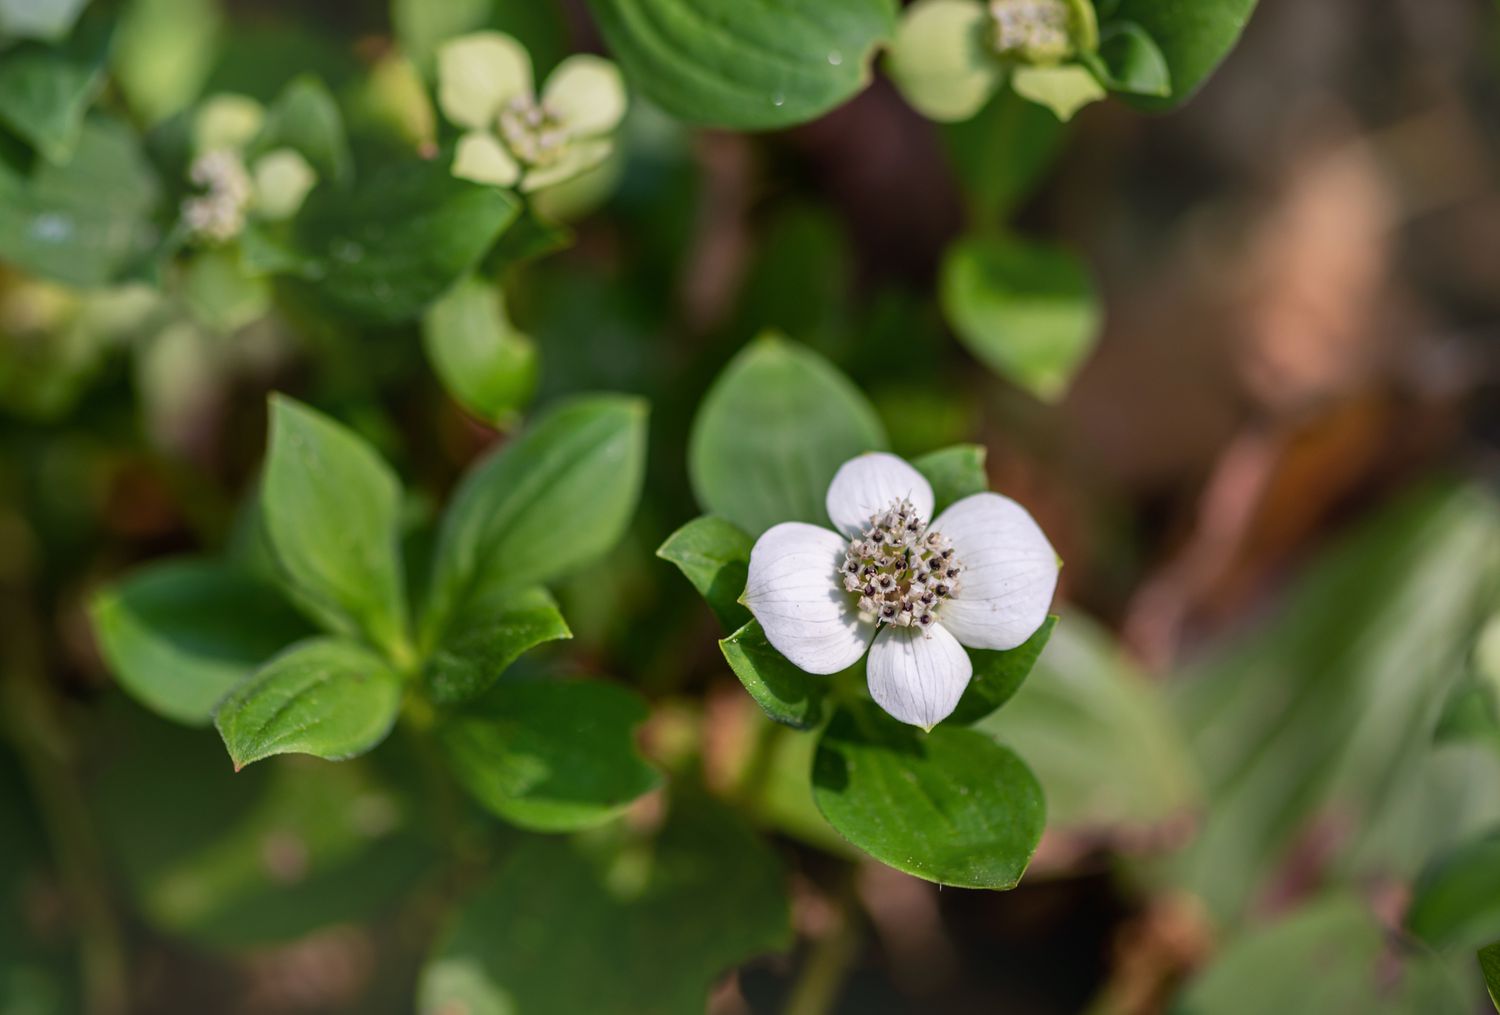 Strauchbeerpflanze mit kleiner weißer, vierblättriger Blüte, umgeben von Blättern